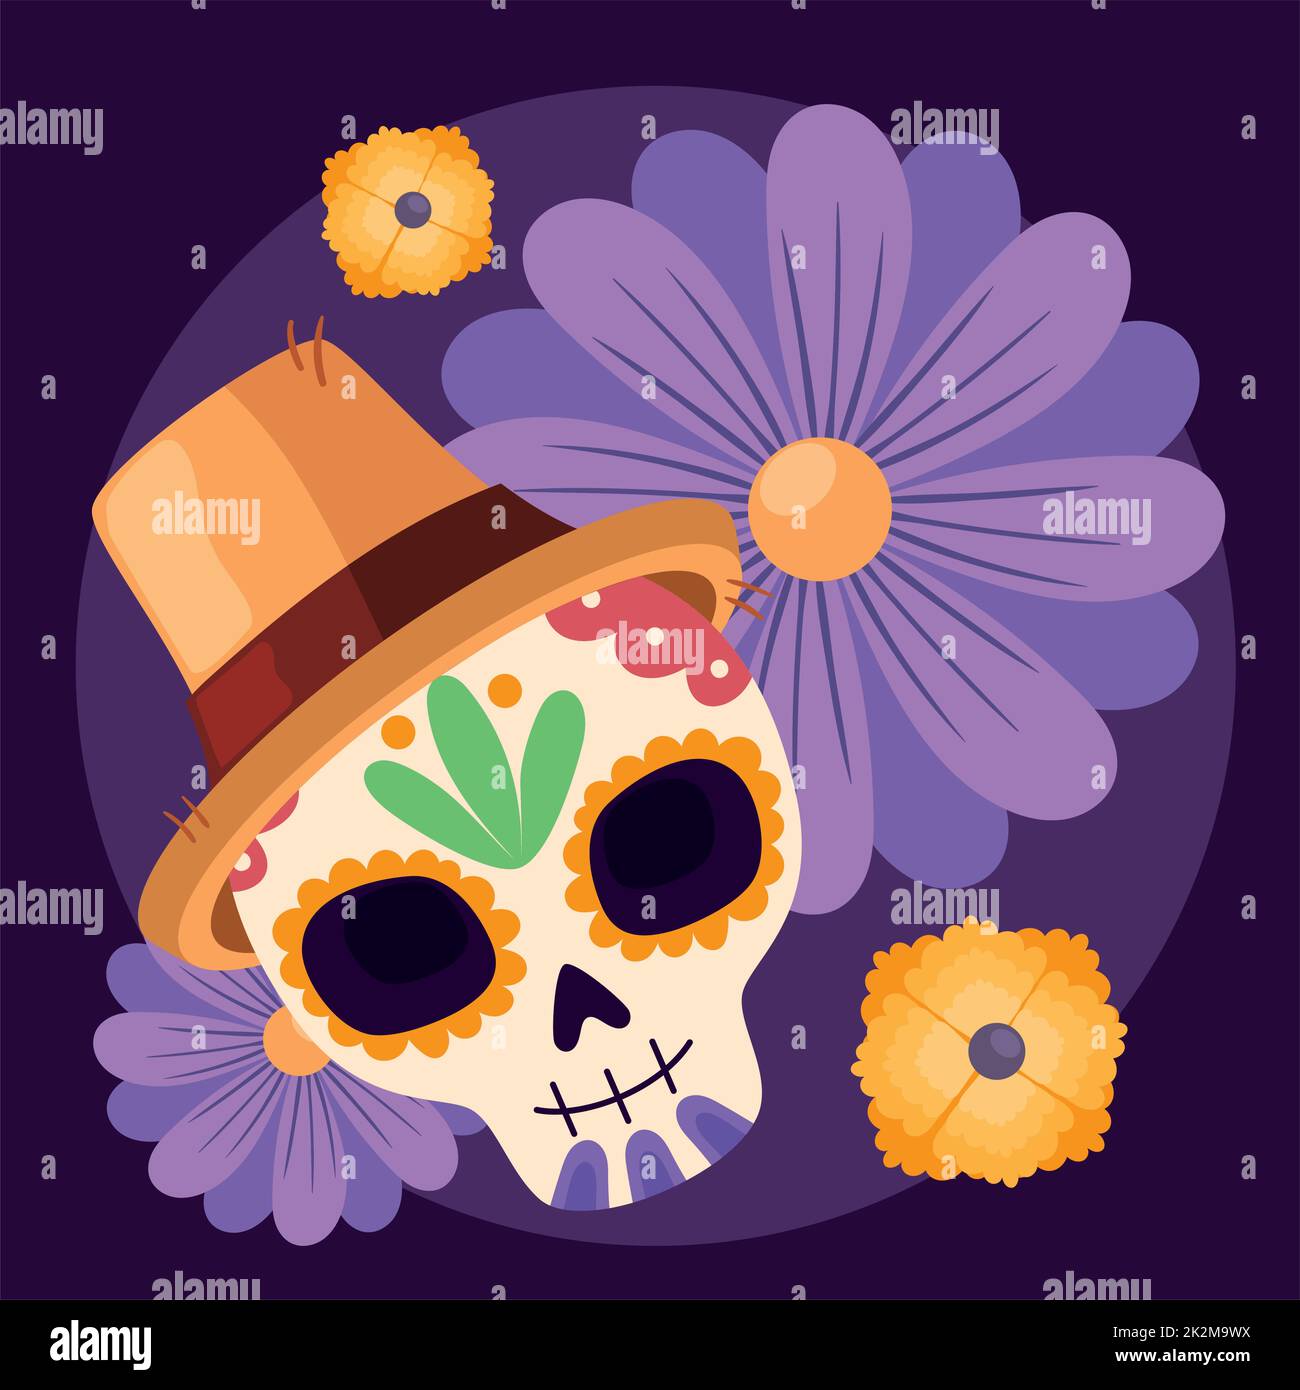 dia de los muertos skull with hat Stock Vector